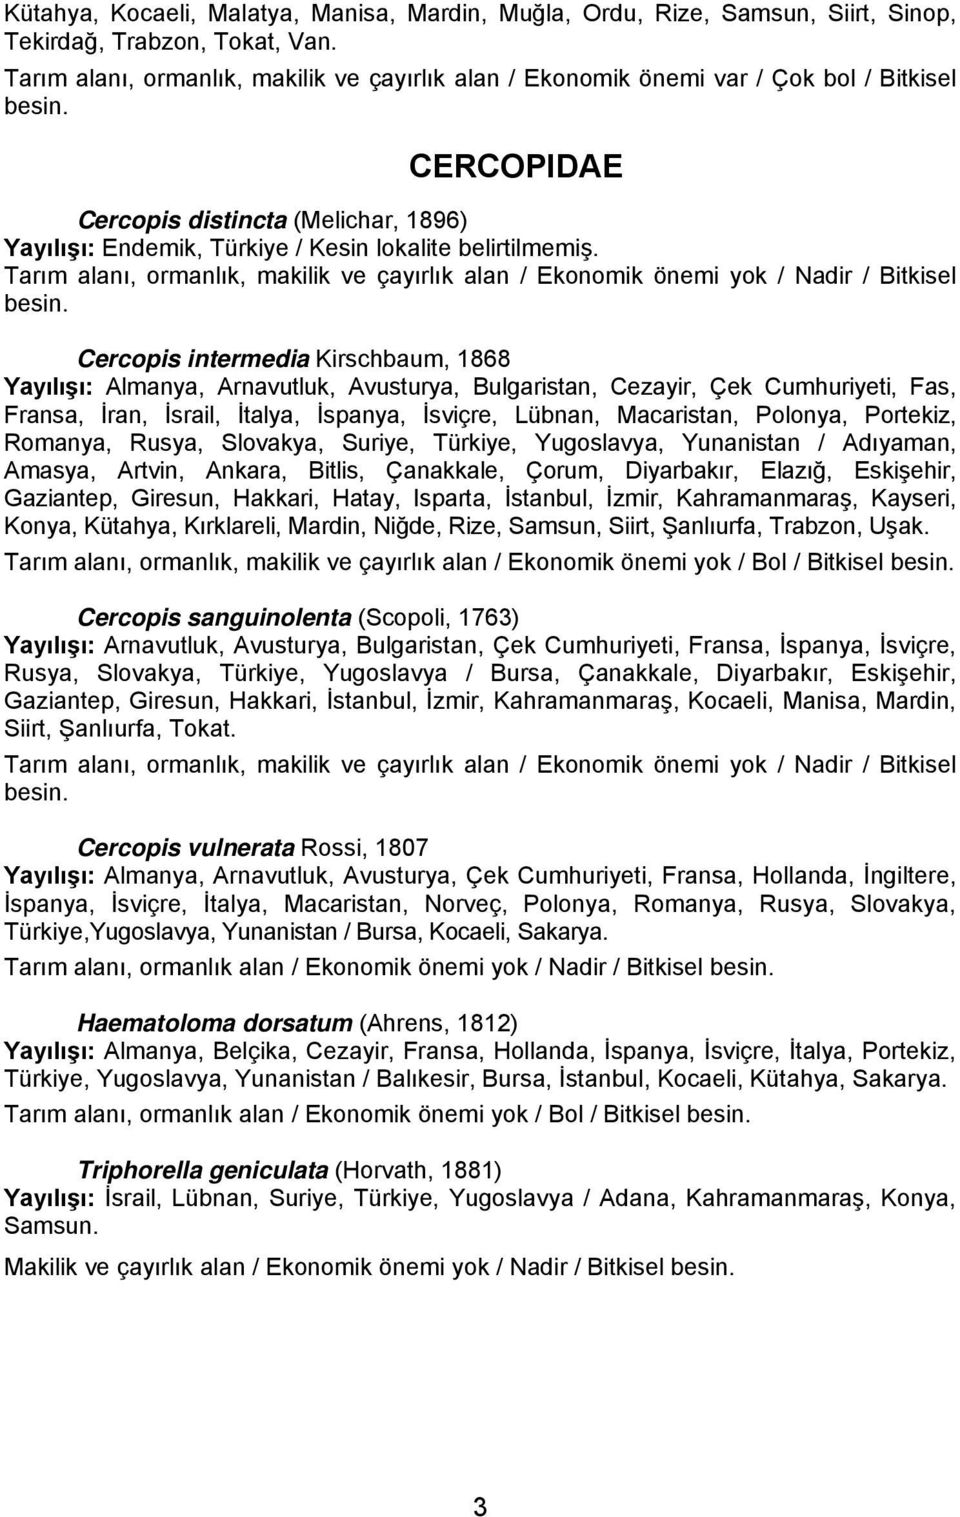 CERCOPIDAE Cercopis distincta (Melichar, 1896) Yayılışı: Endemik, Türkiye / Kesin lokalite belirtilmemiş. Tarım alanı, ormanlık, makilik ve çayırlık alan / Ekonomik önemi yok / Nadir / Bitkisel besin.